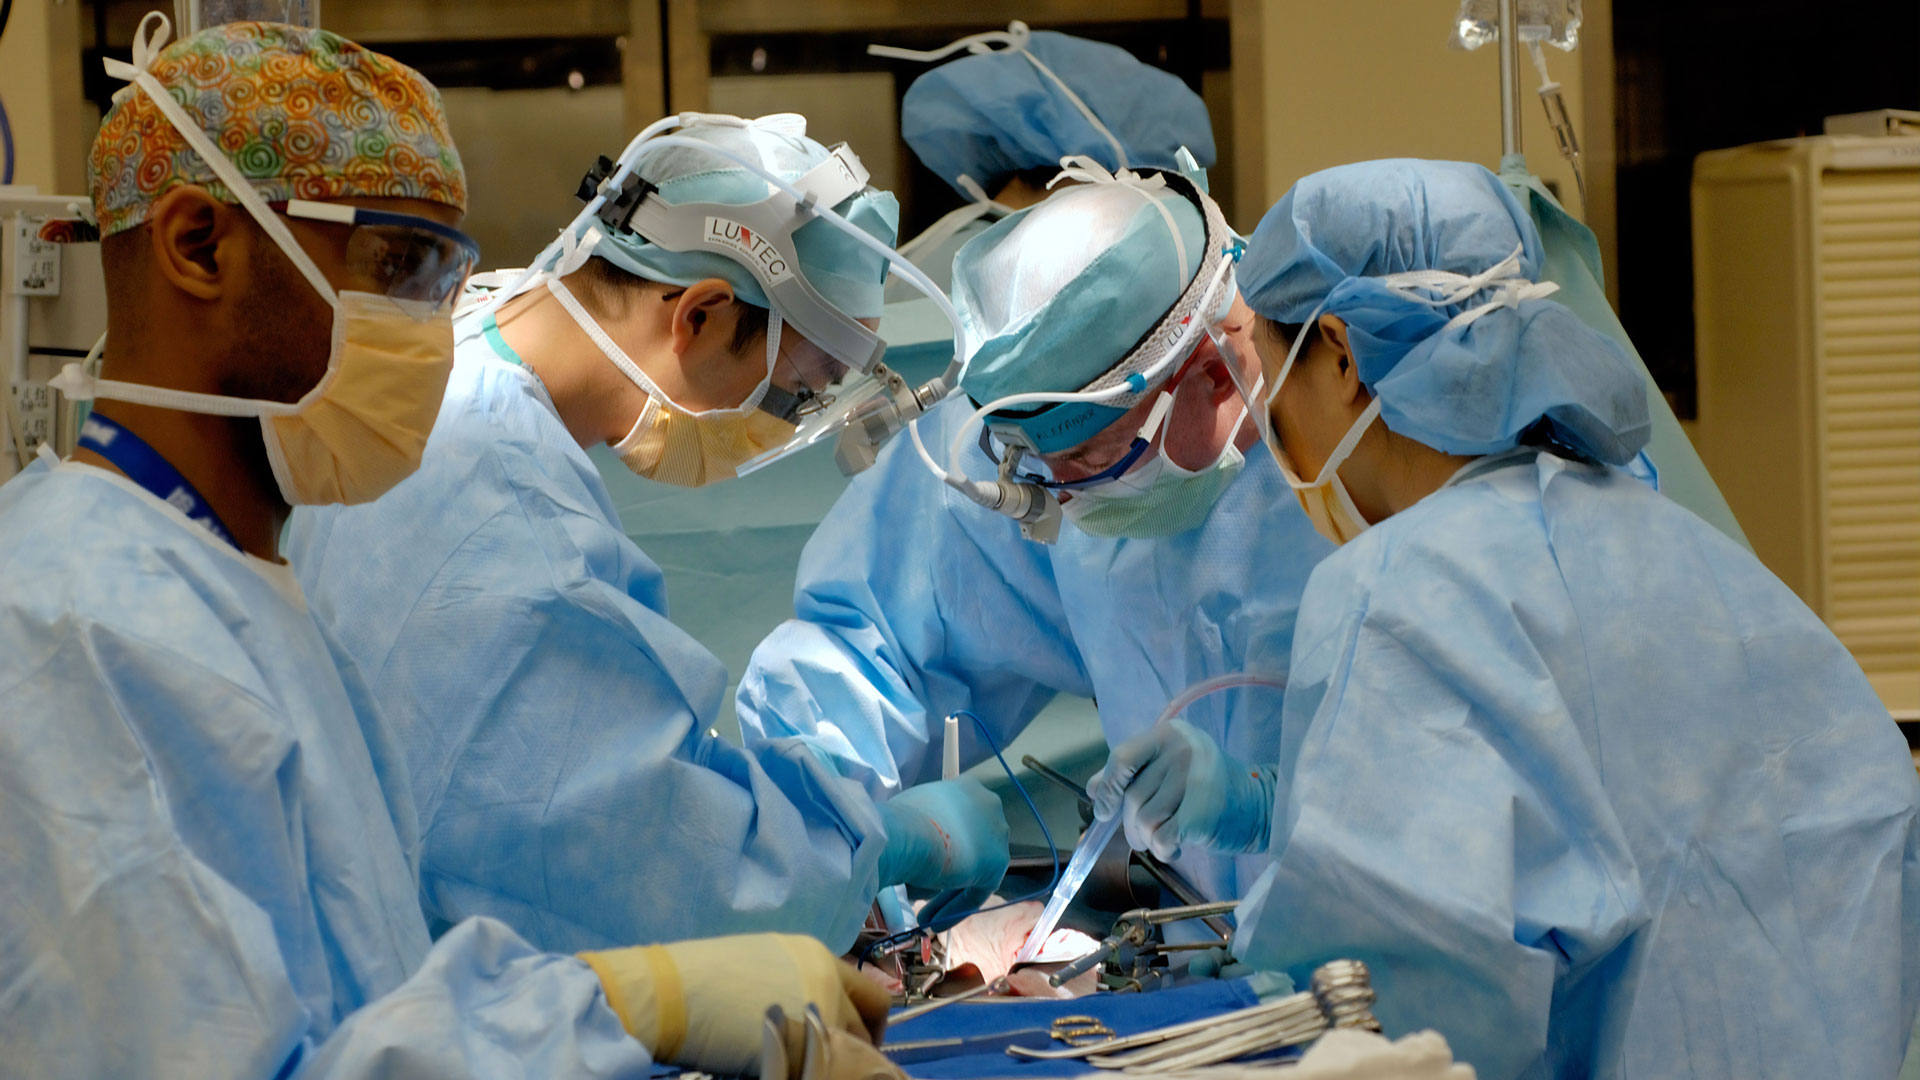 Mejorando la experiencia quirúrgica